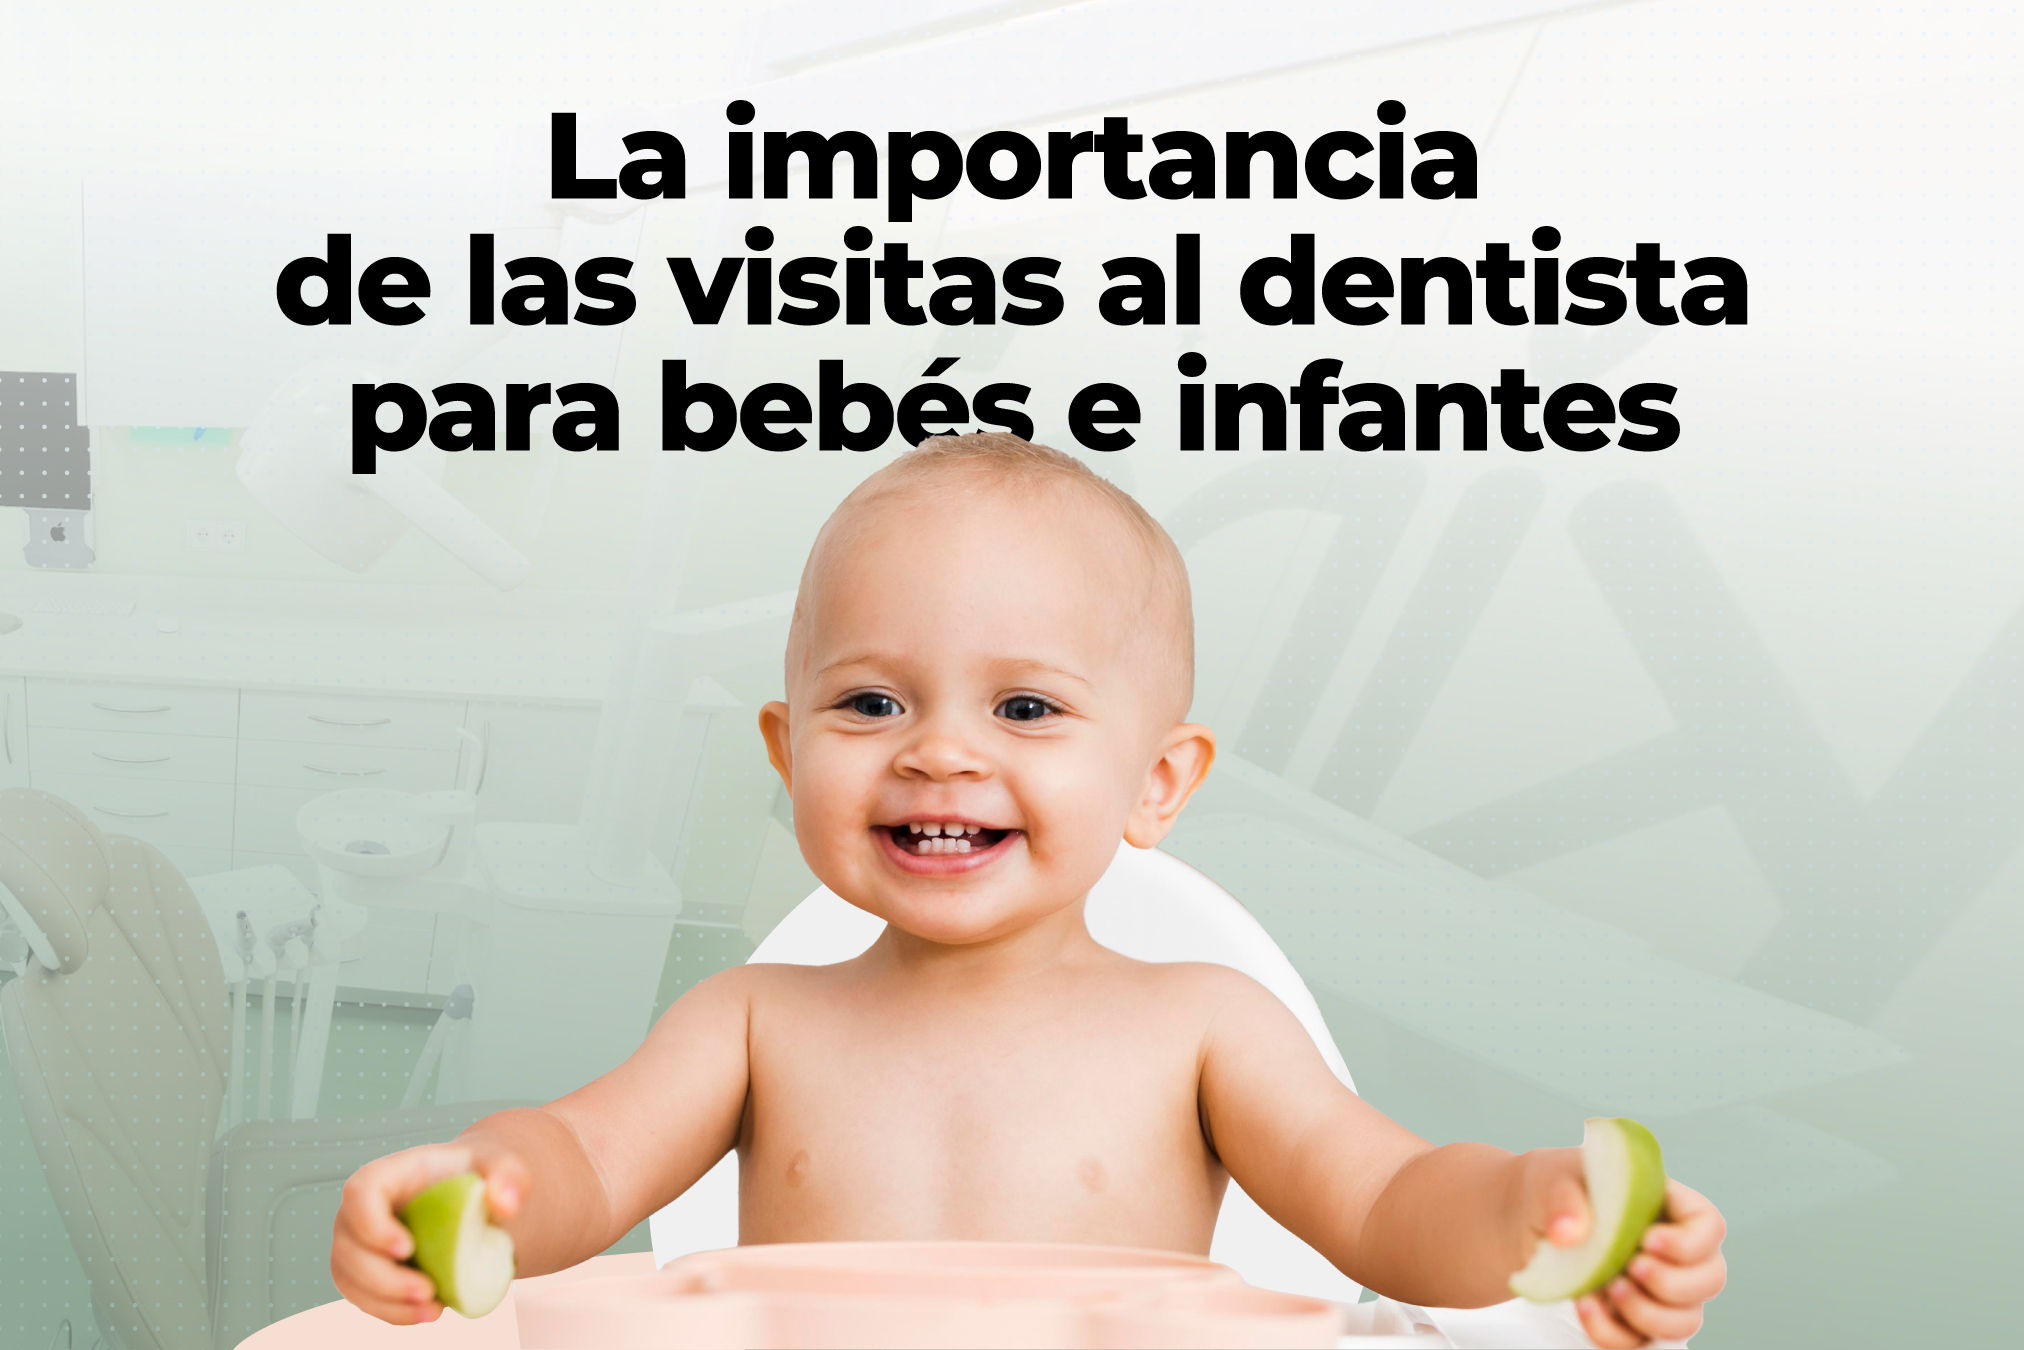 La importancia de las visitas al dentista para bebés e infantes